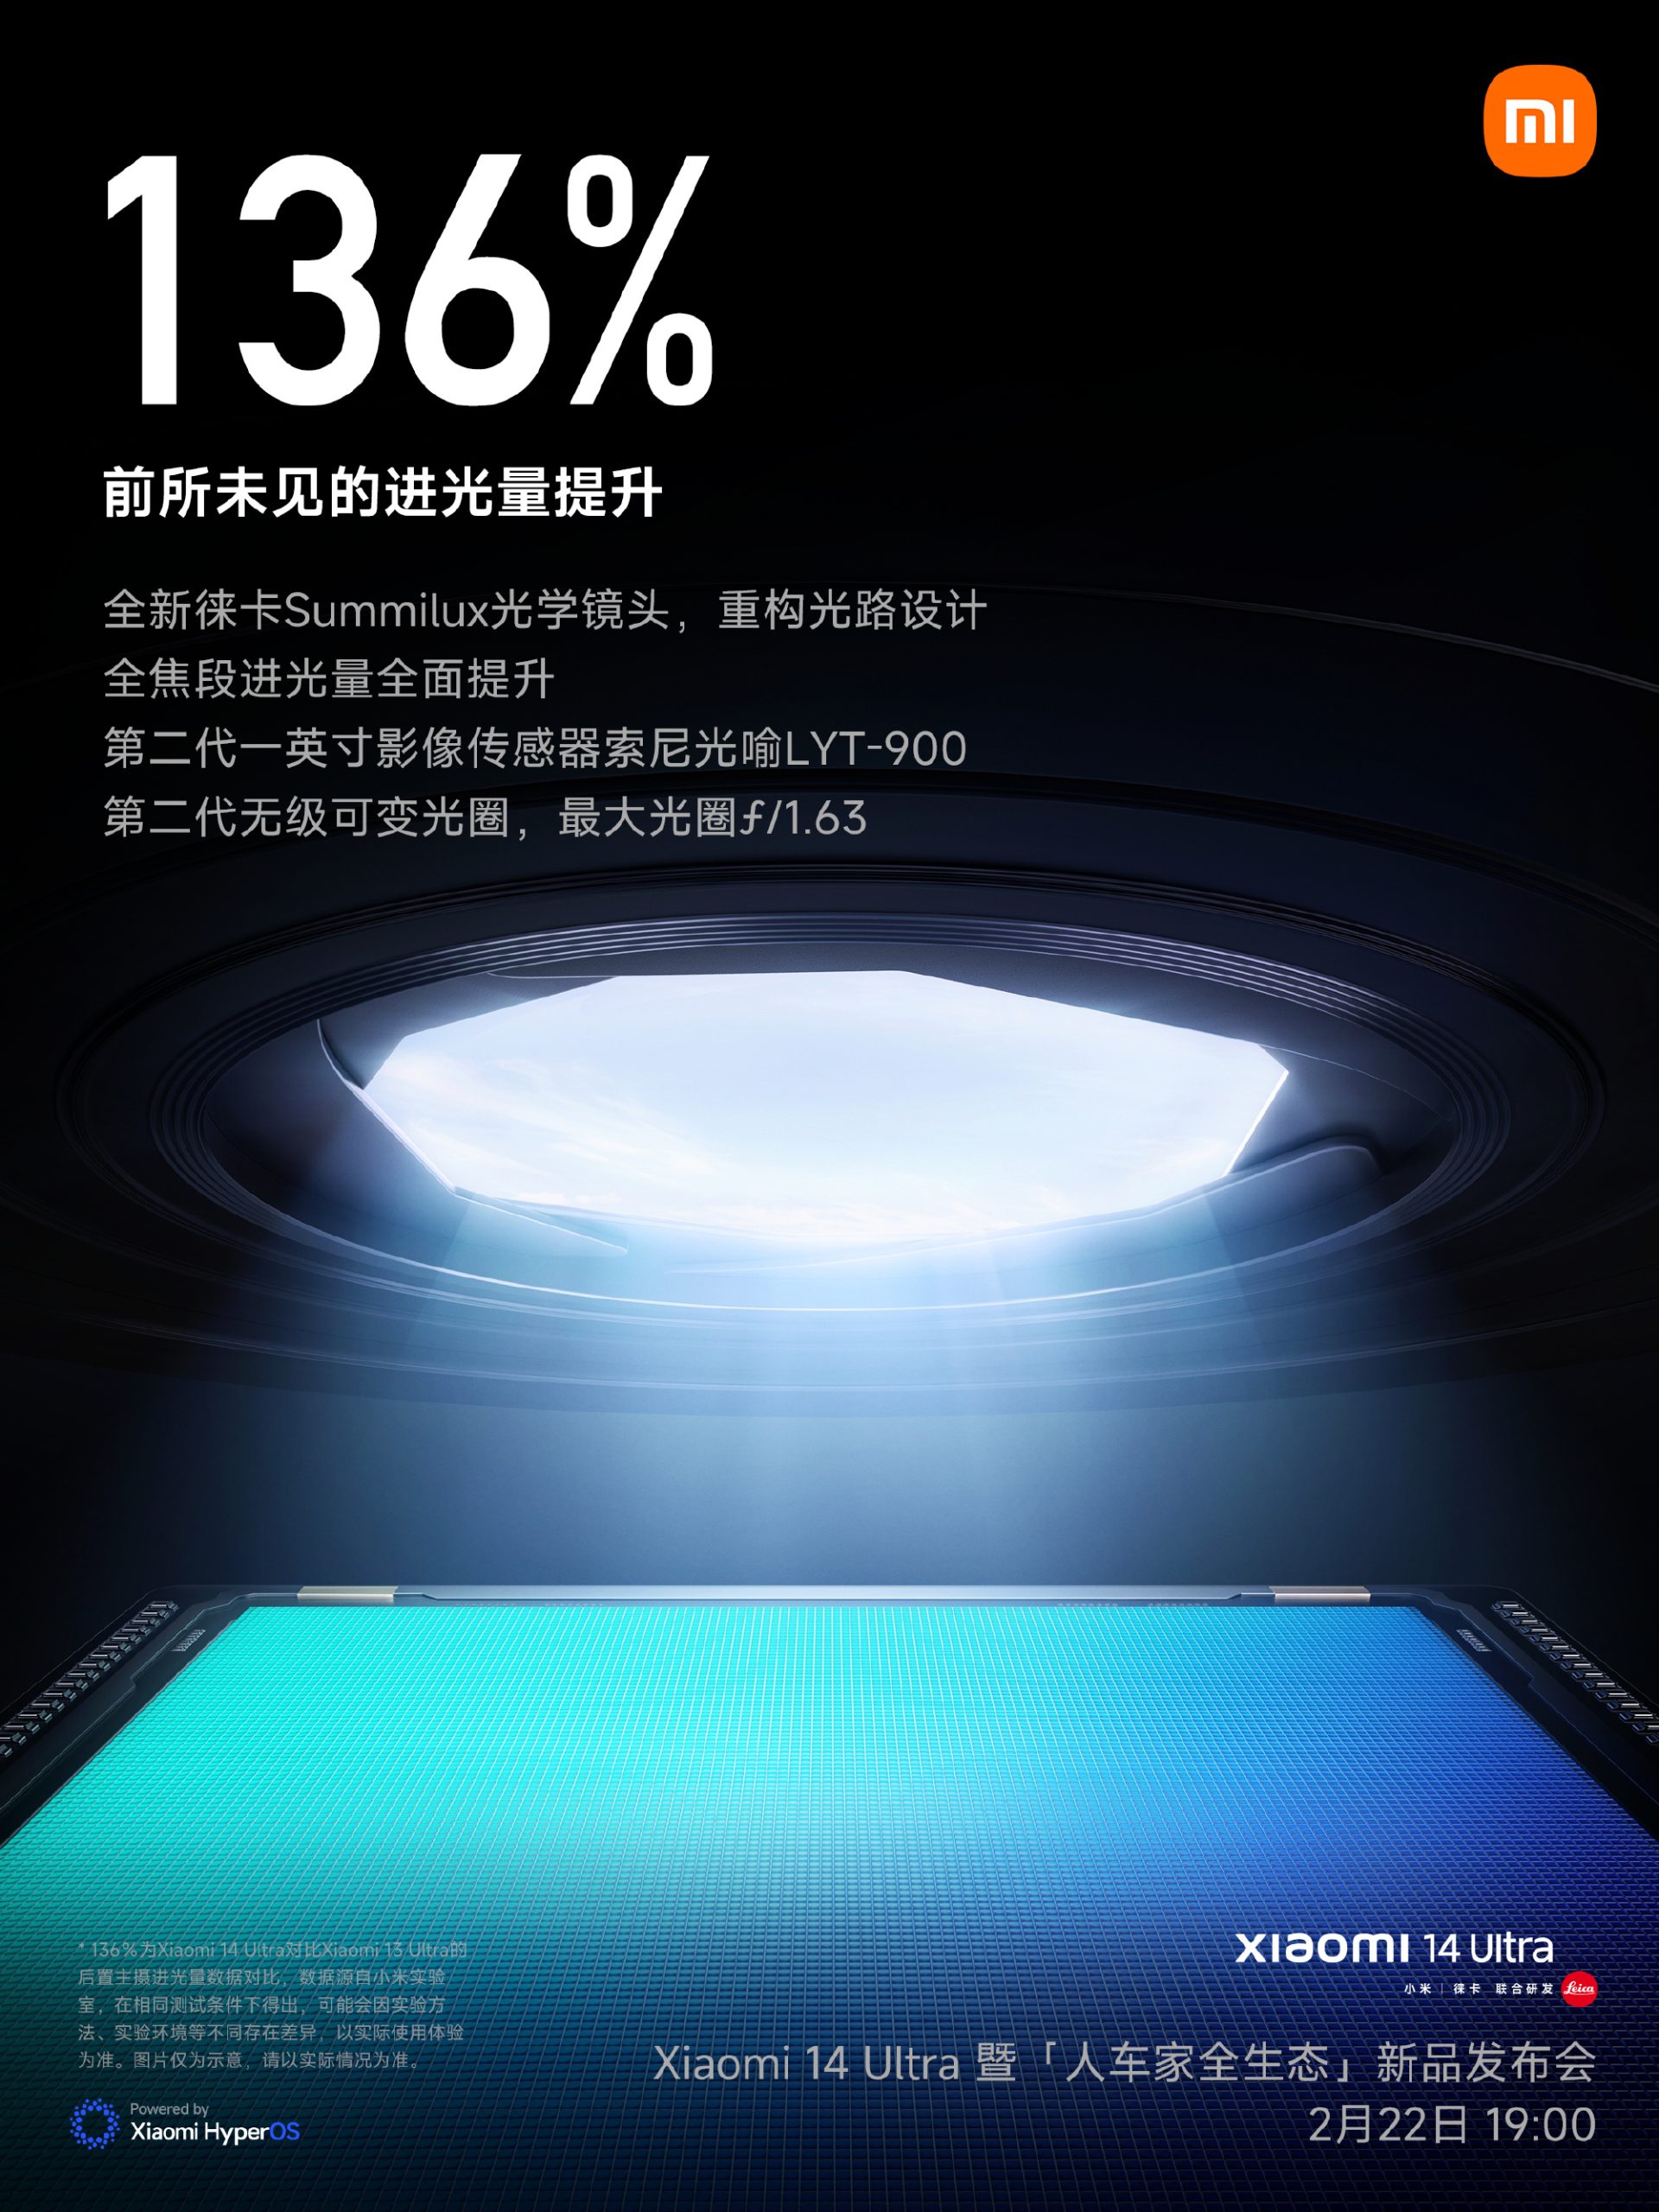 Xiaomi 14 Ultra primary camera